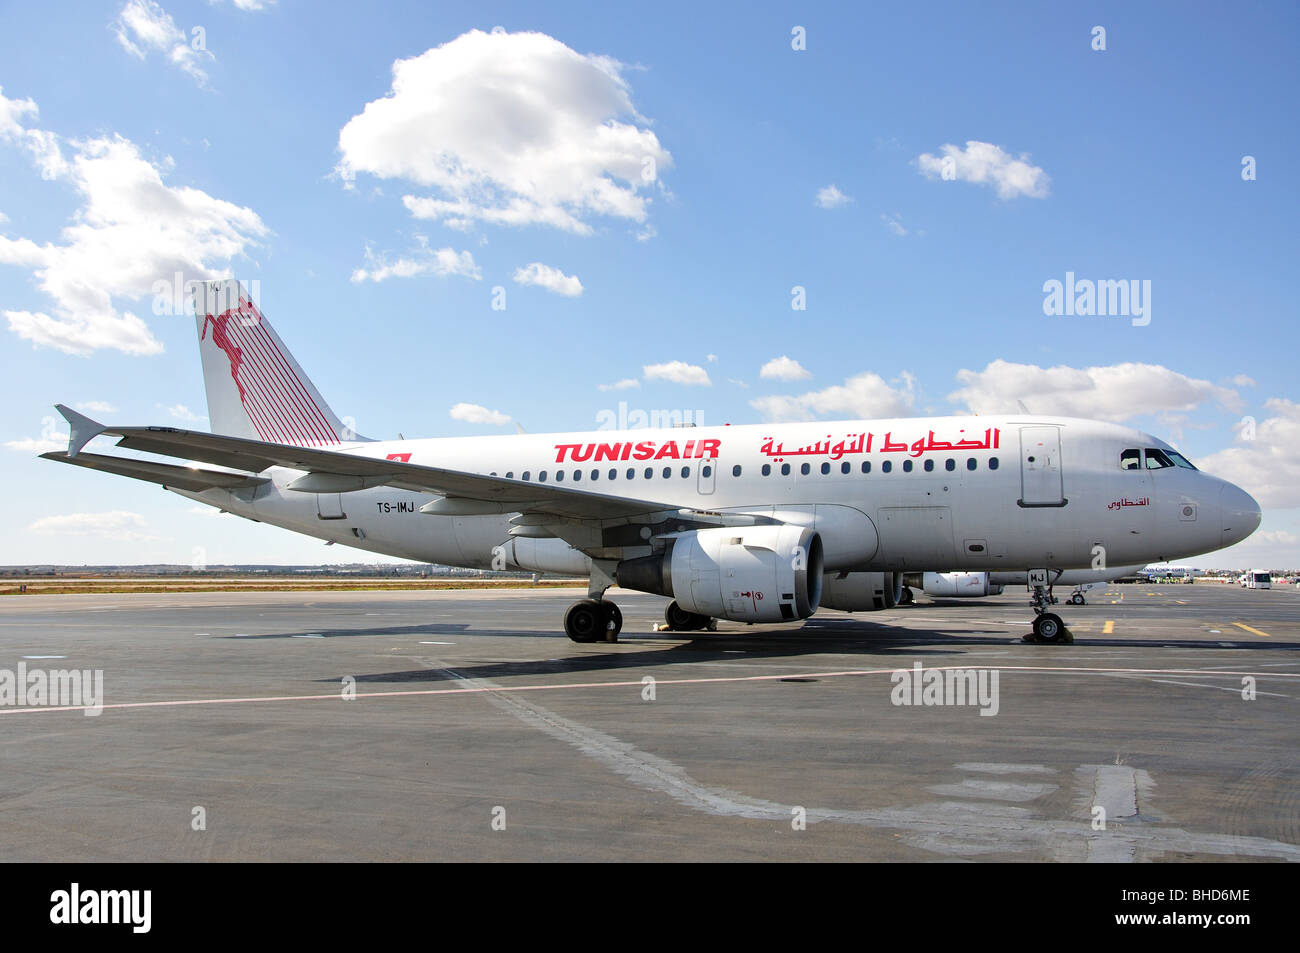 Tunisair Airbus 319 aircraft on tarmac, Habib Bourguiba International Airport, Monastir, Monastir Governorate, Tunisia Stock Photo